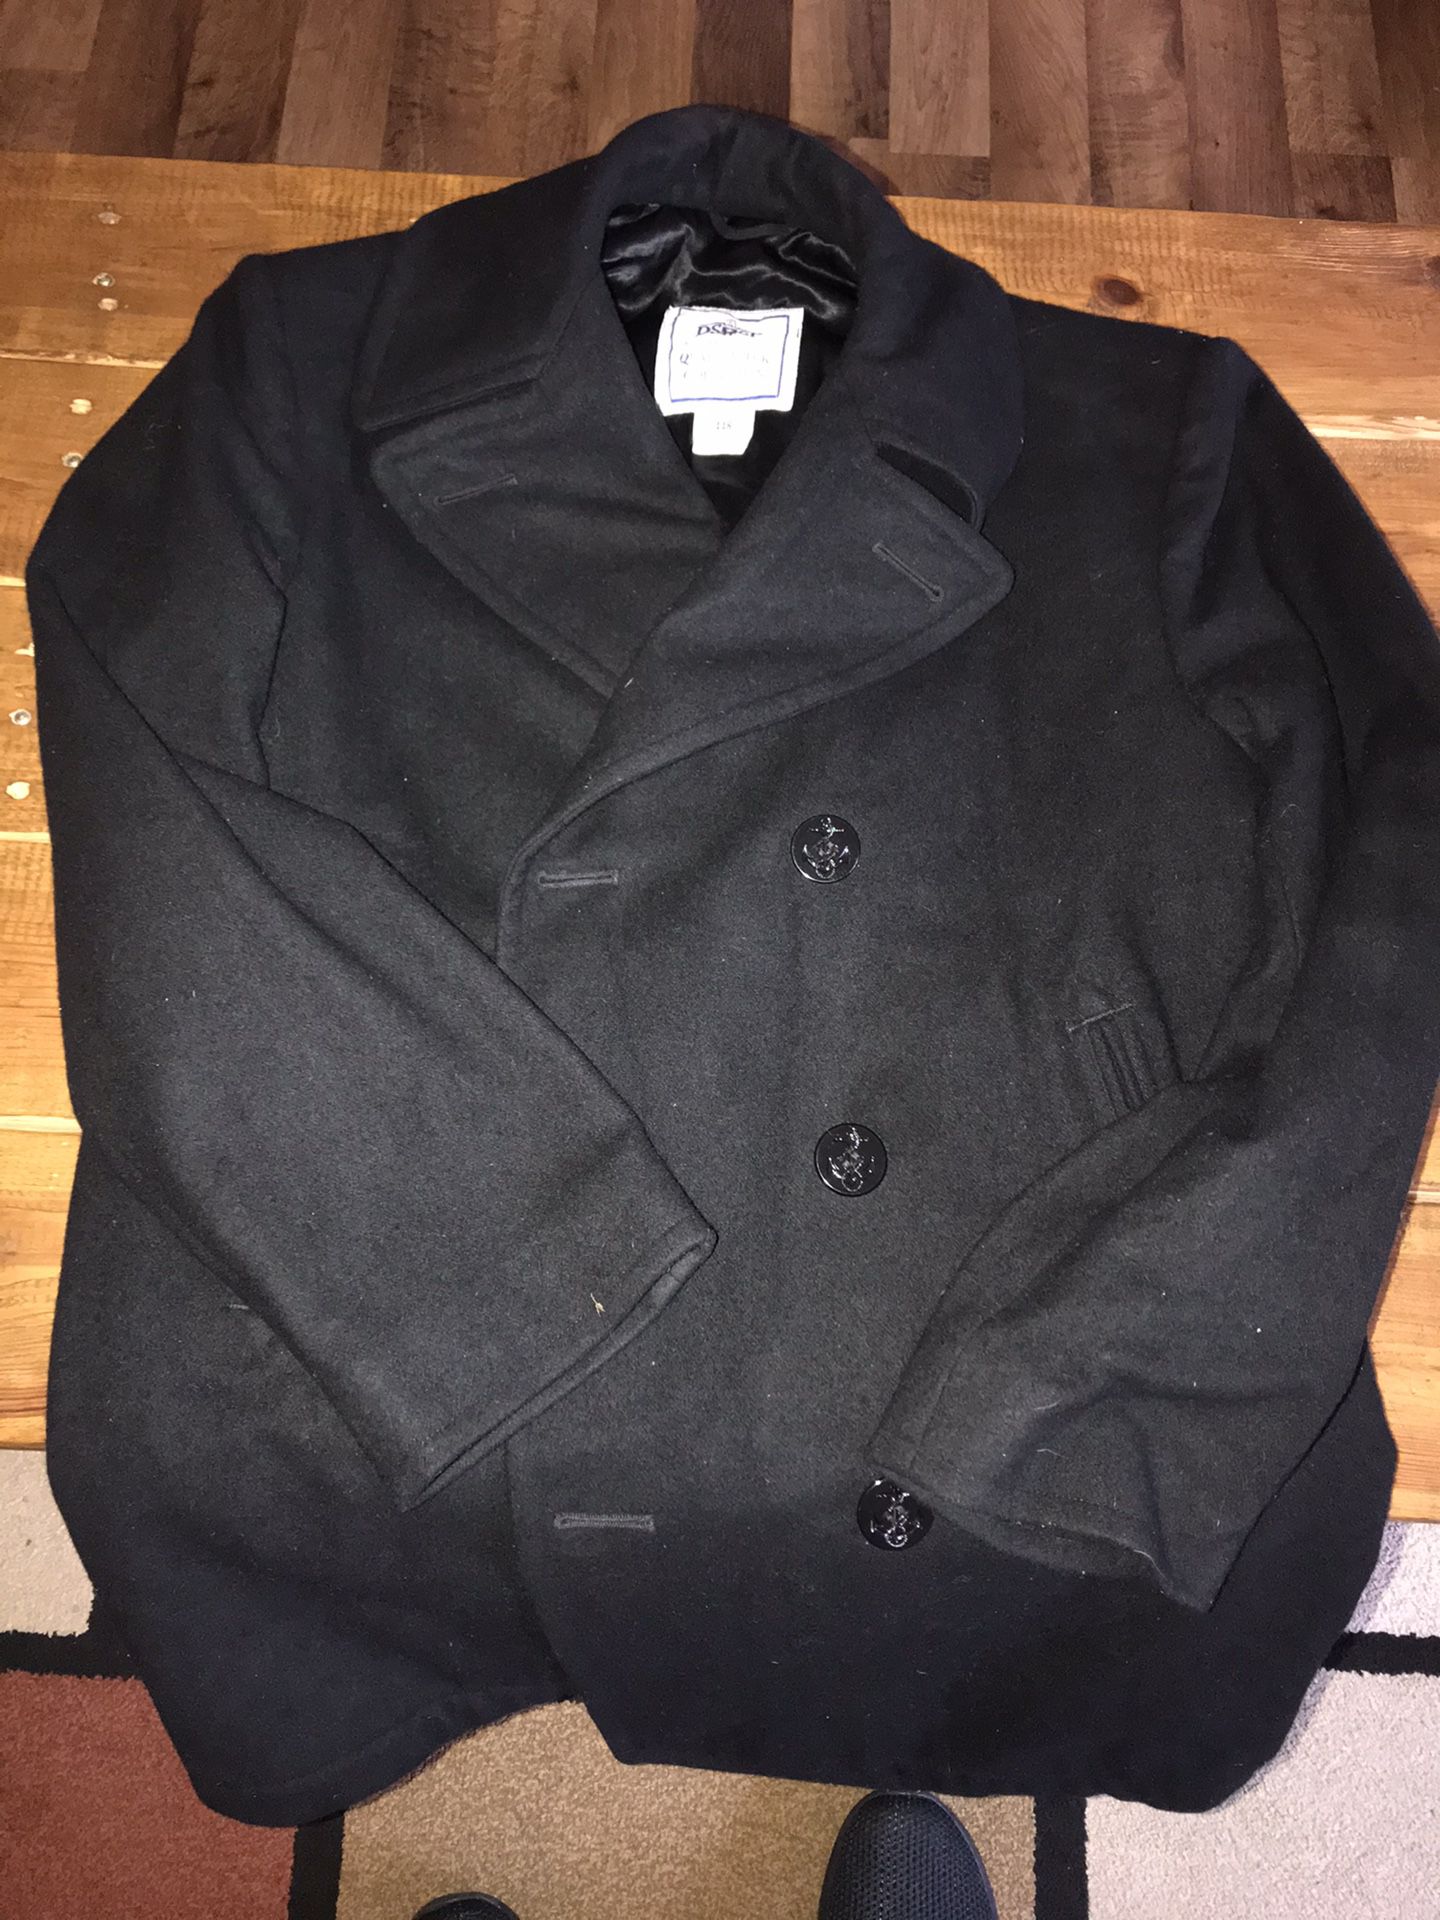 Navy Sea Bag w/19 Pieces - Peacoat, Gortex Jacket, Uniforms..